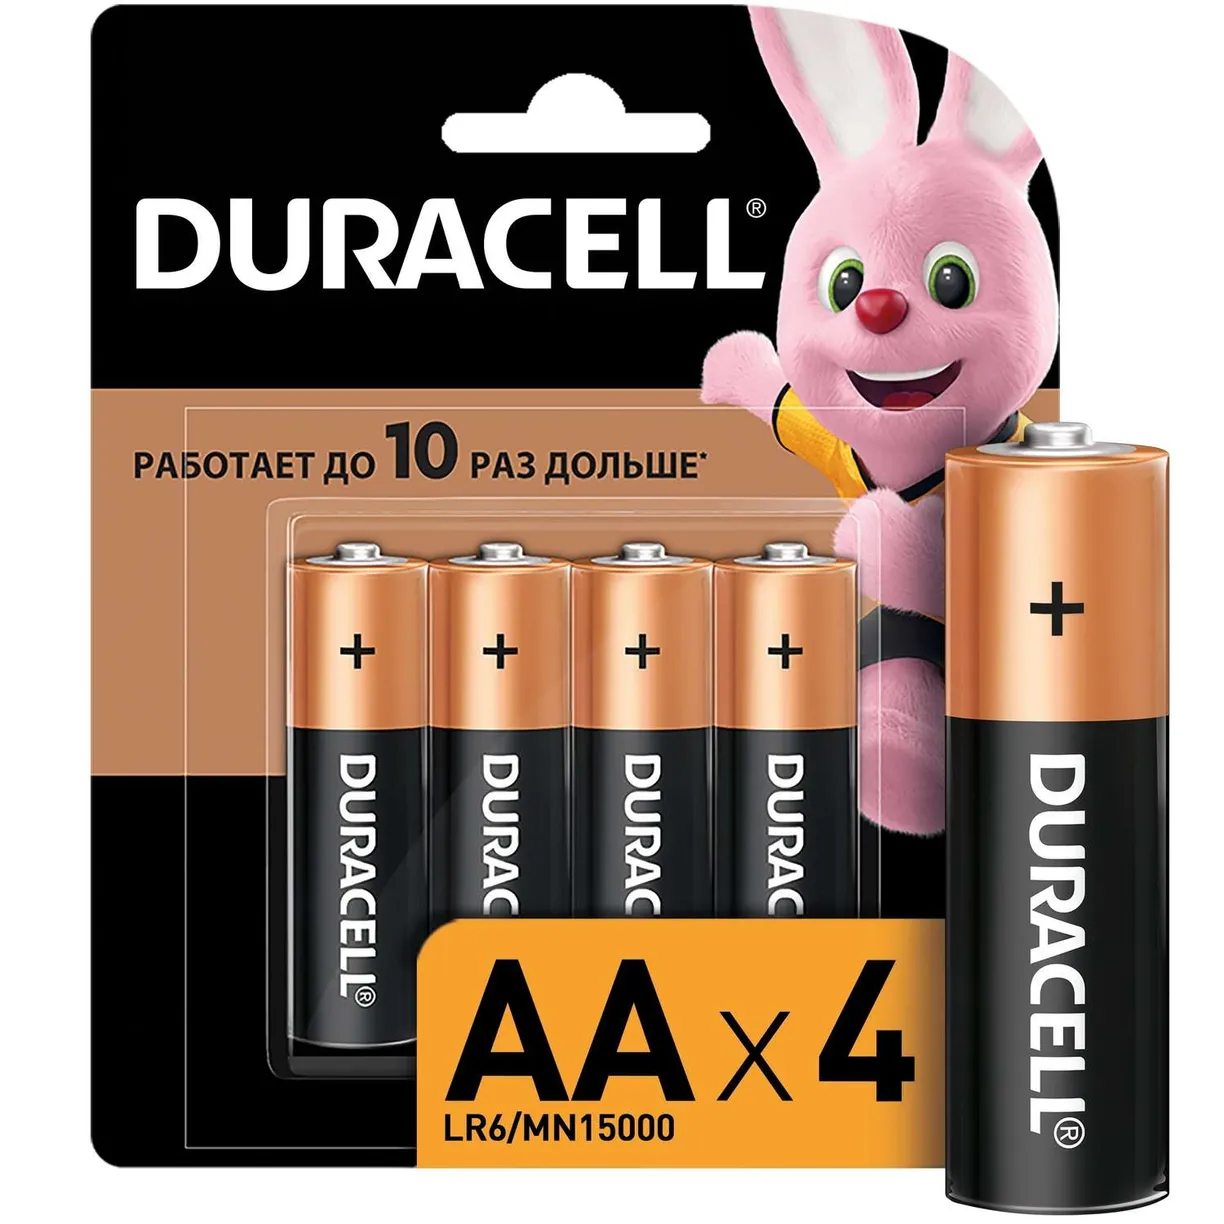 Батарейки Duracell Basic AA, 4 шт. батарейки duracell lr6 2bl basic аа 2шт